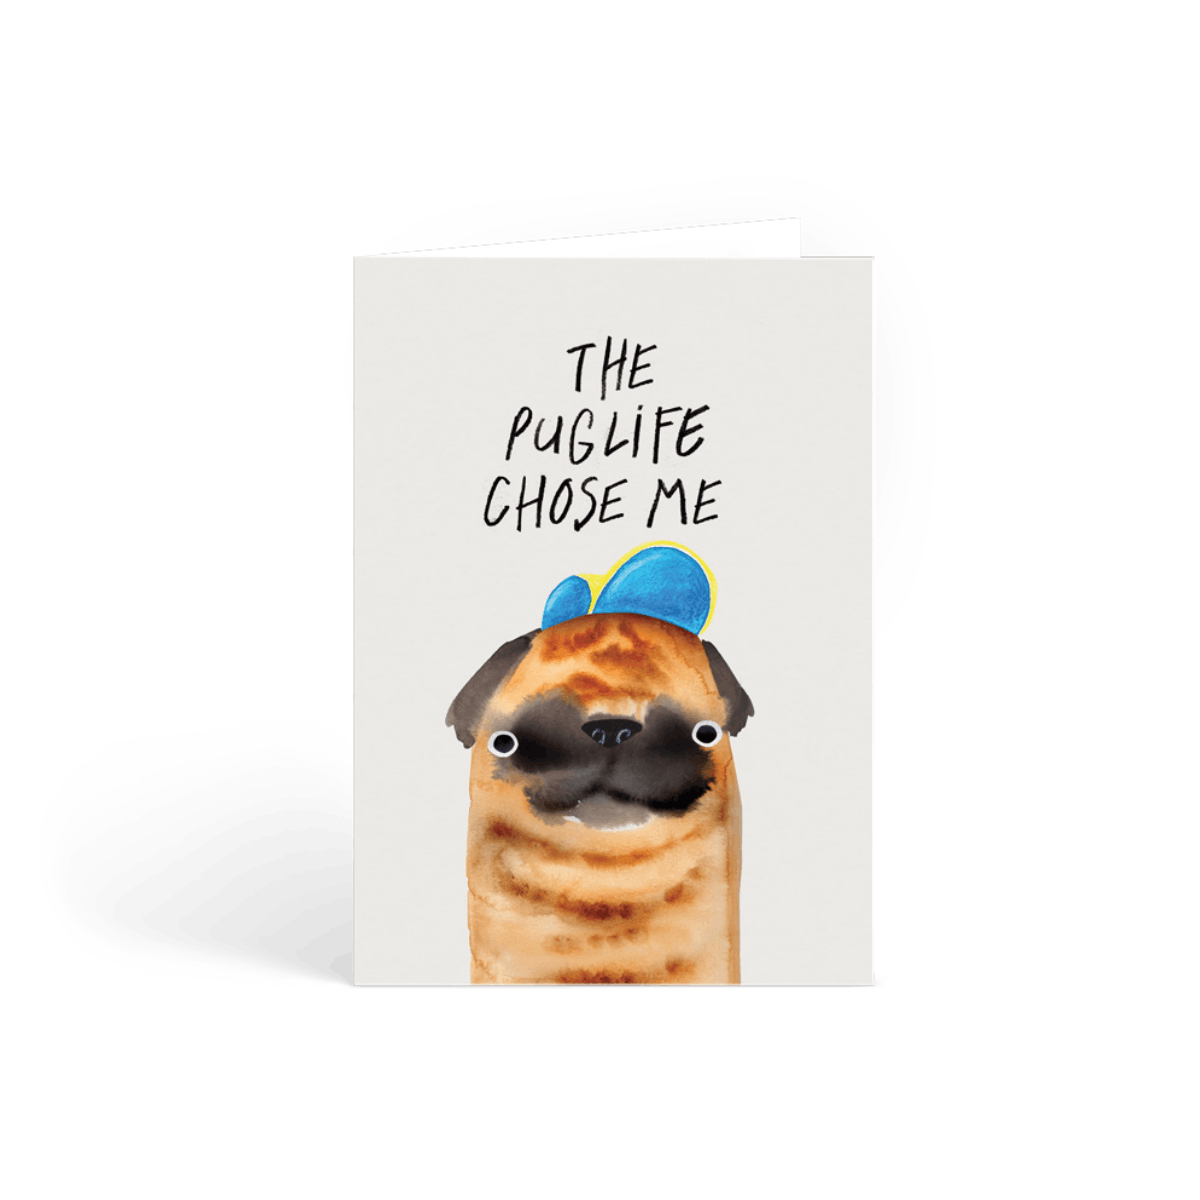 The Pug Life